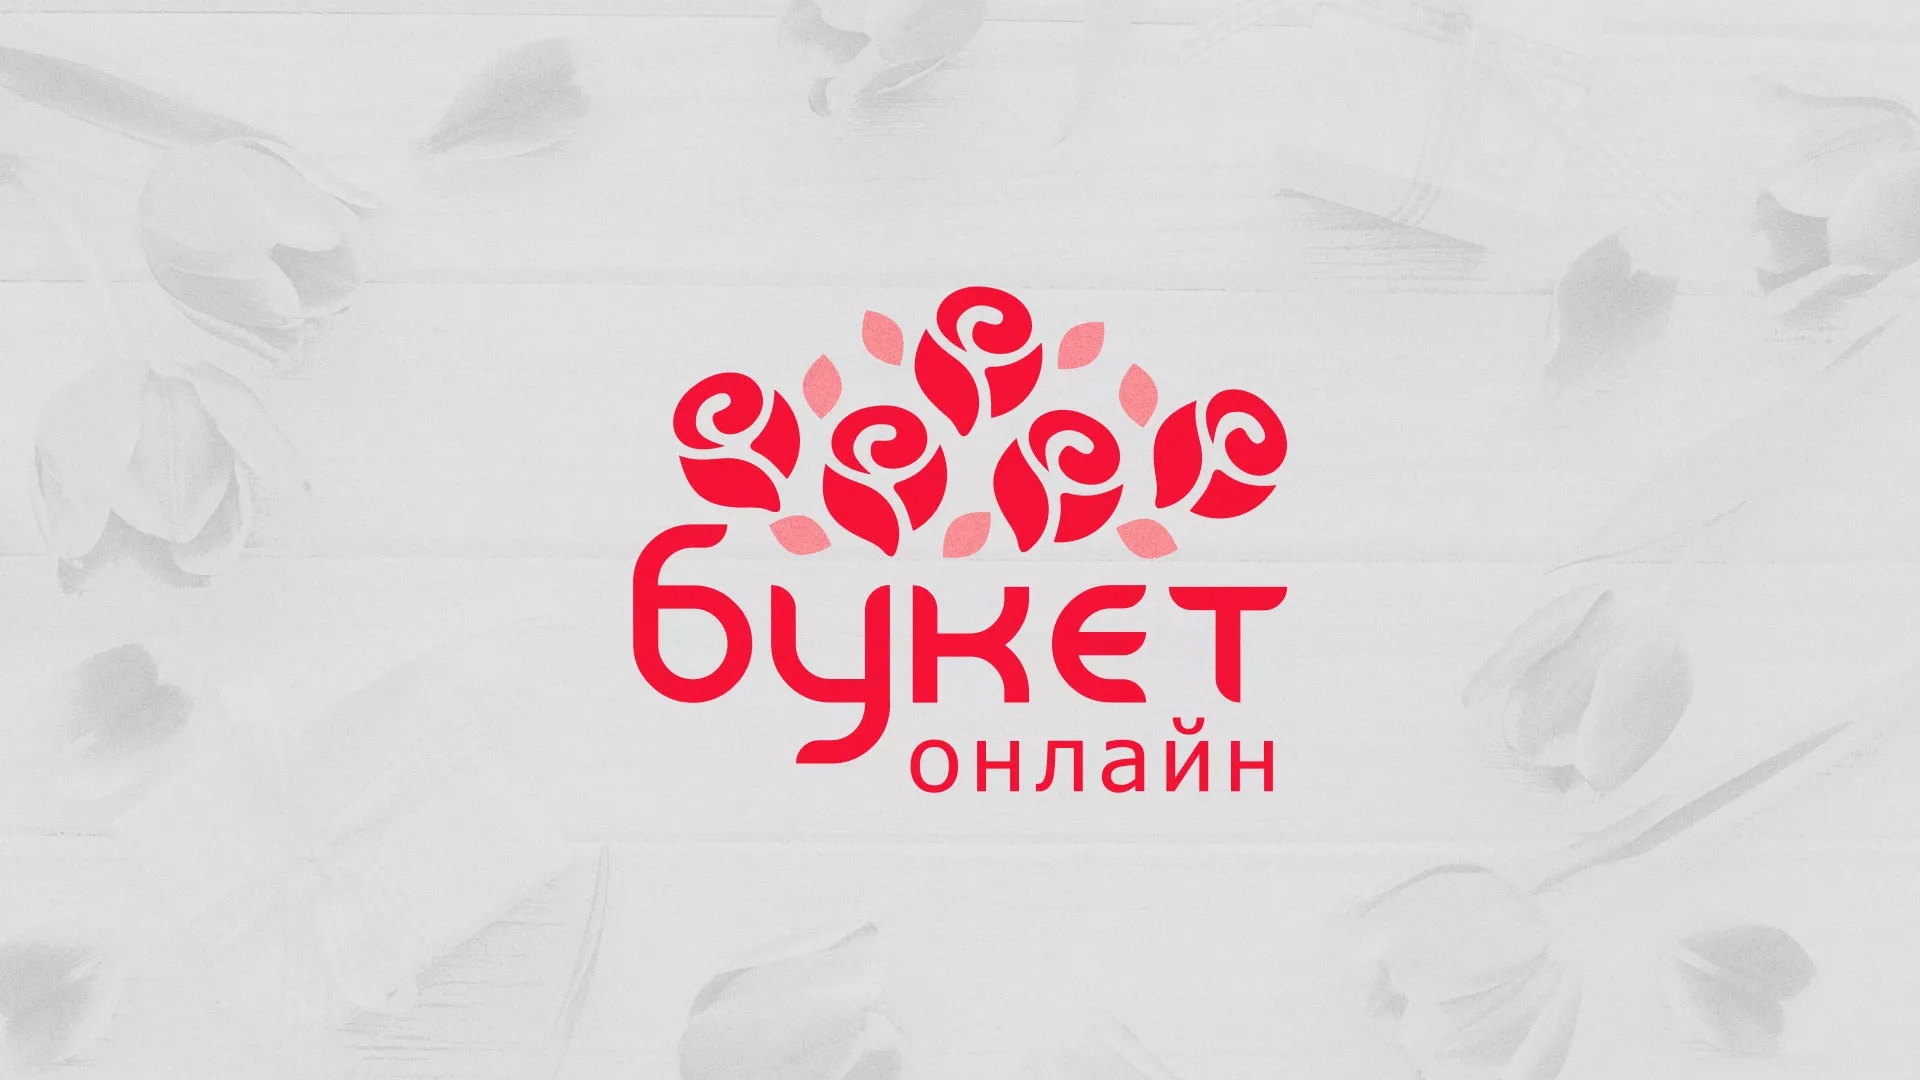 Создание интернет-магазина «Букет-онлайн» по цветам в Москве